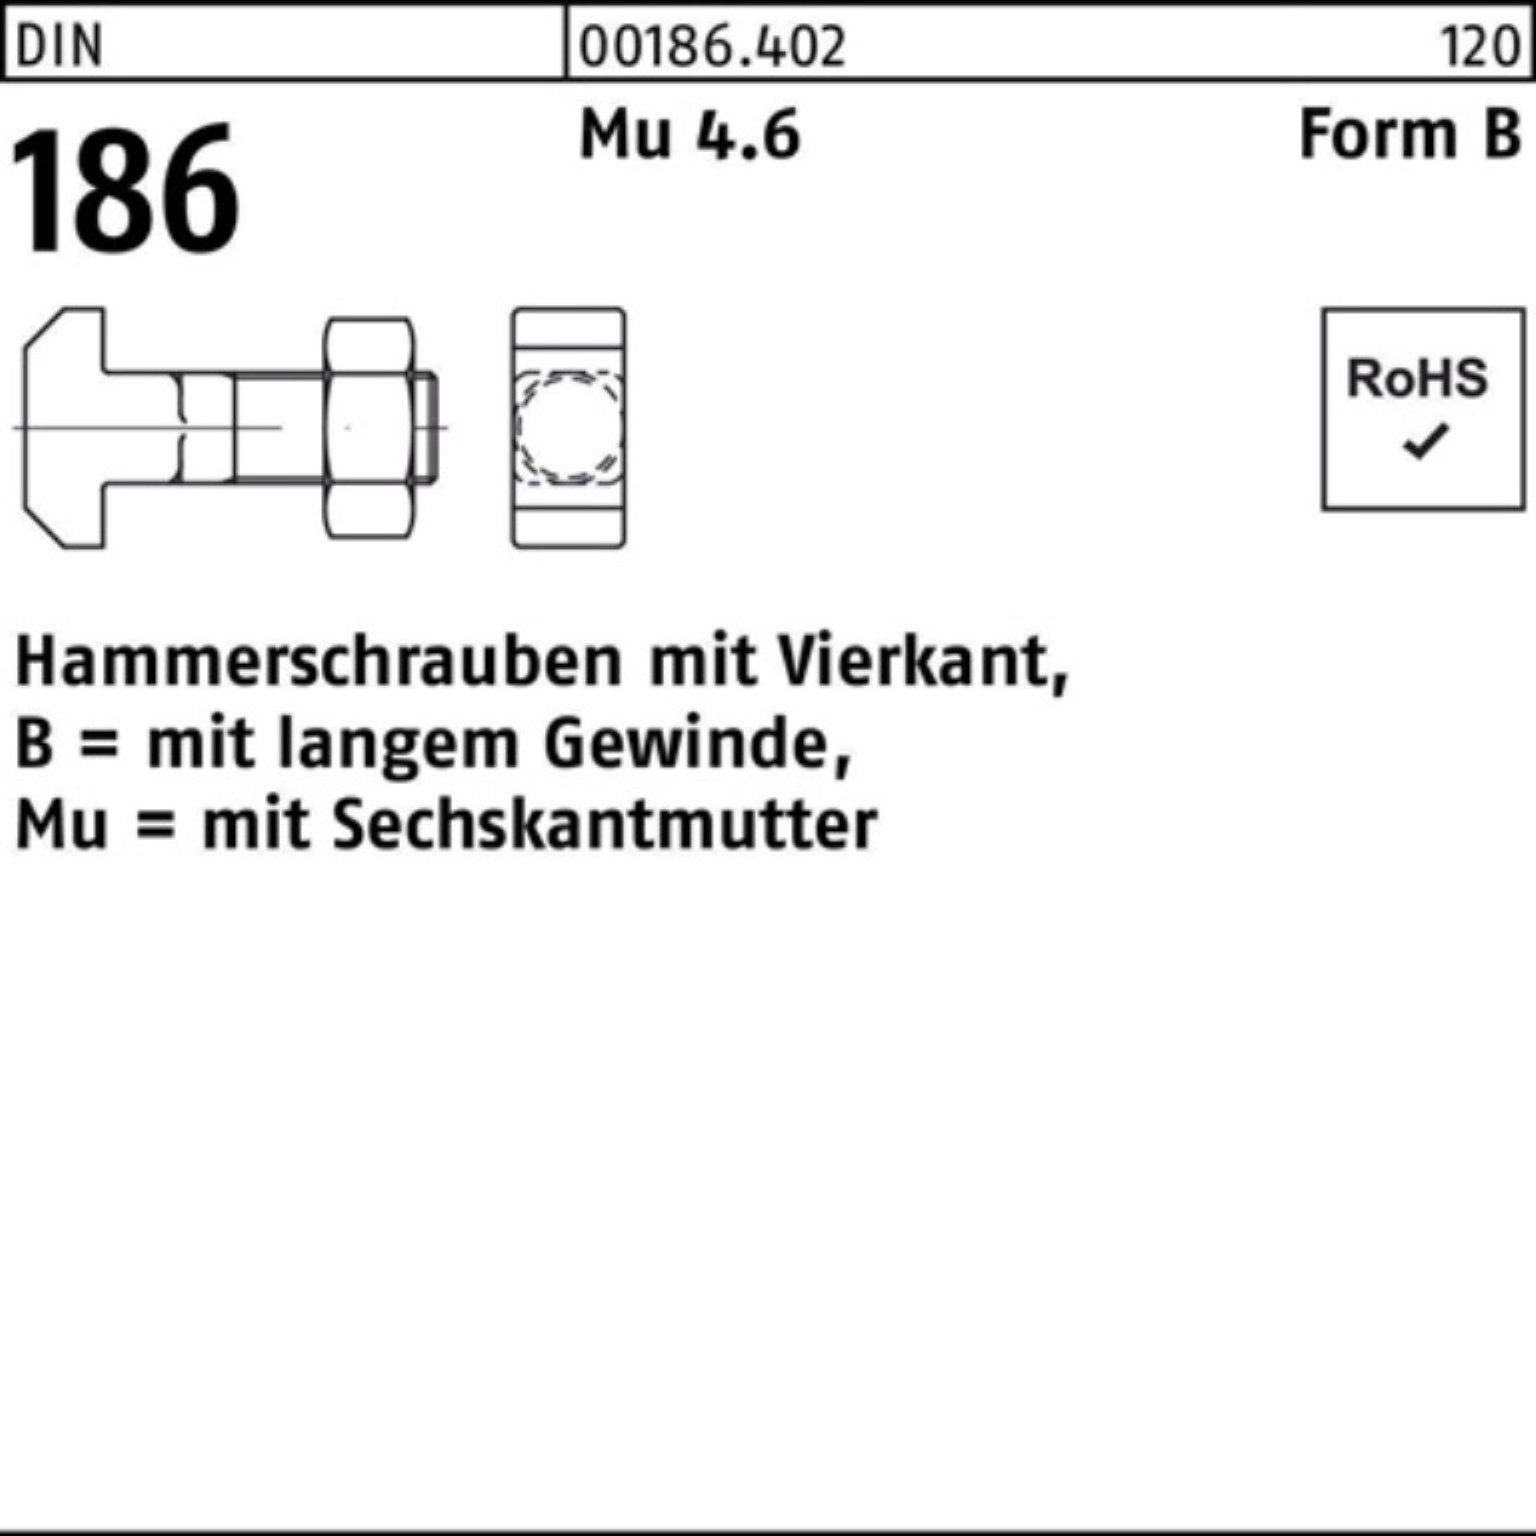 Reyher 186 DIN FormB Hammerschraube Schraube BM Pack 100er 20x 140 Vierkant 6-ktmutter